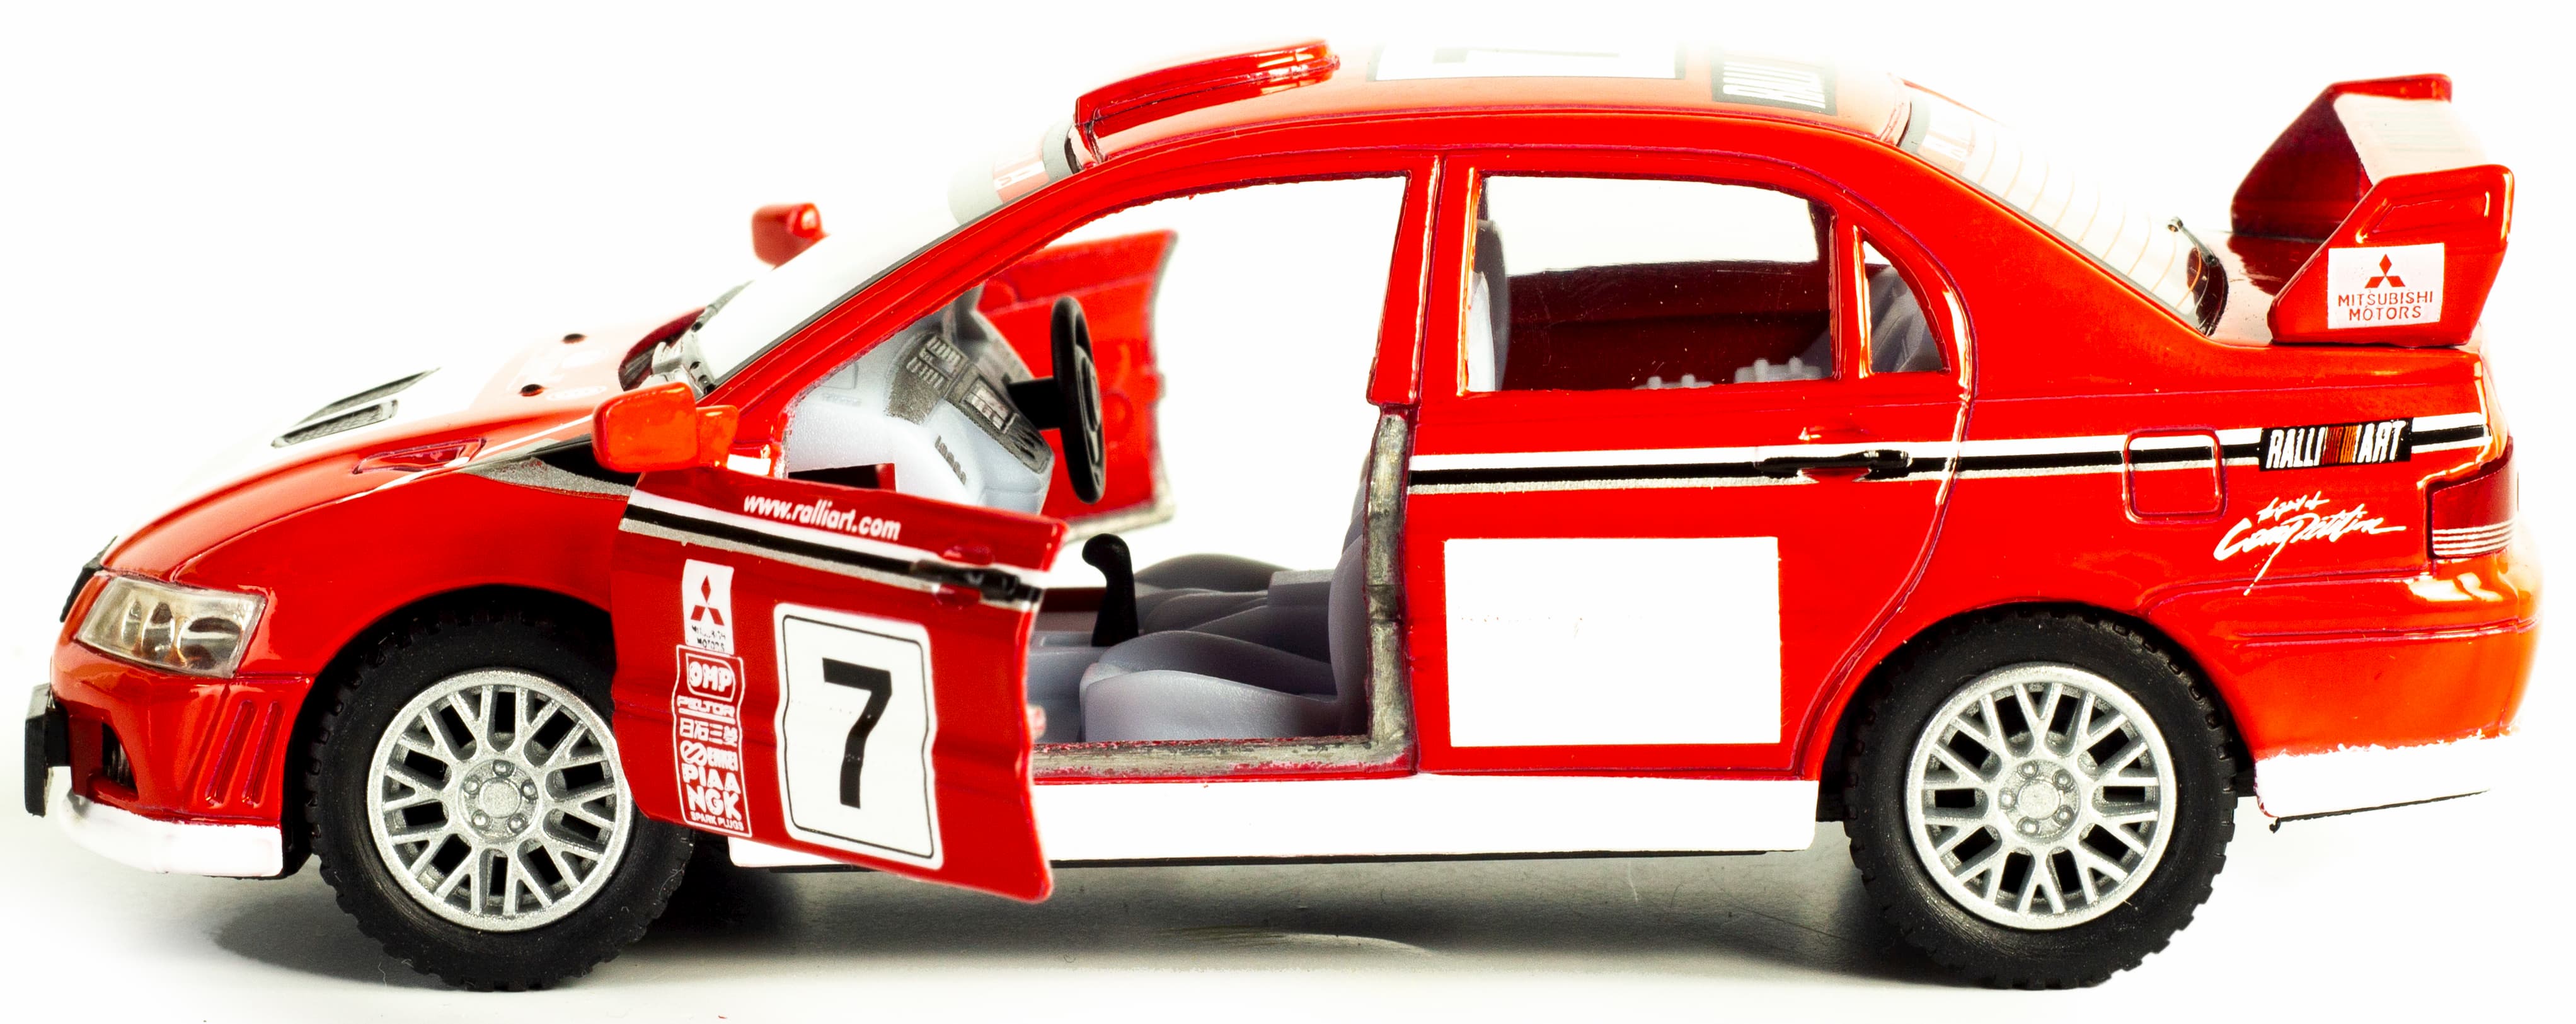 Металлическая машинка Kinsmart 1:36 «Mitsubishi Lancer Evolution VII WRC» KT5048W инерционная в коробке